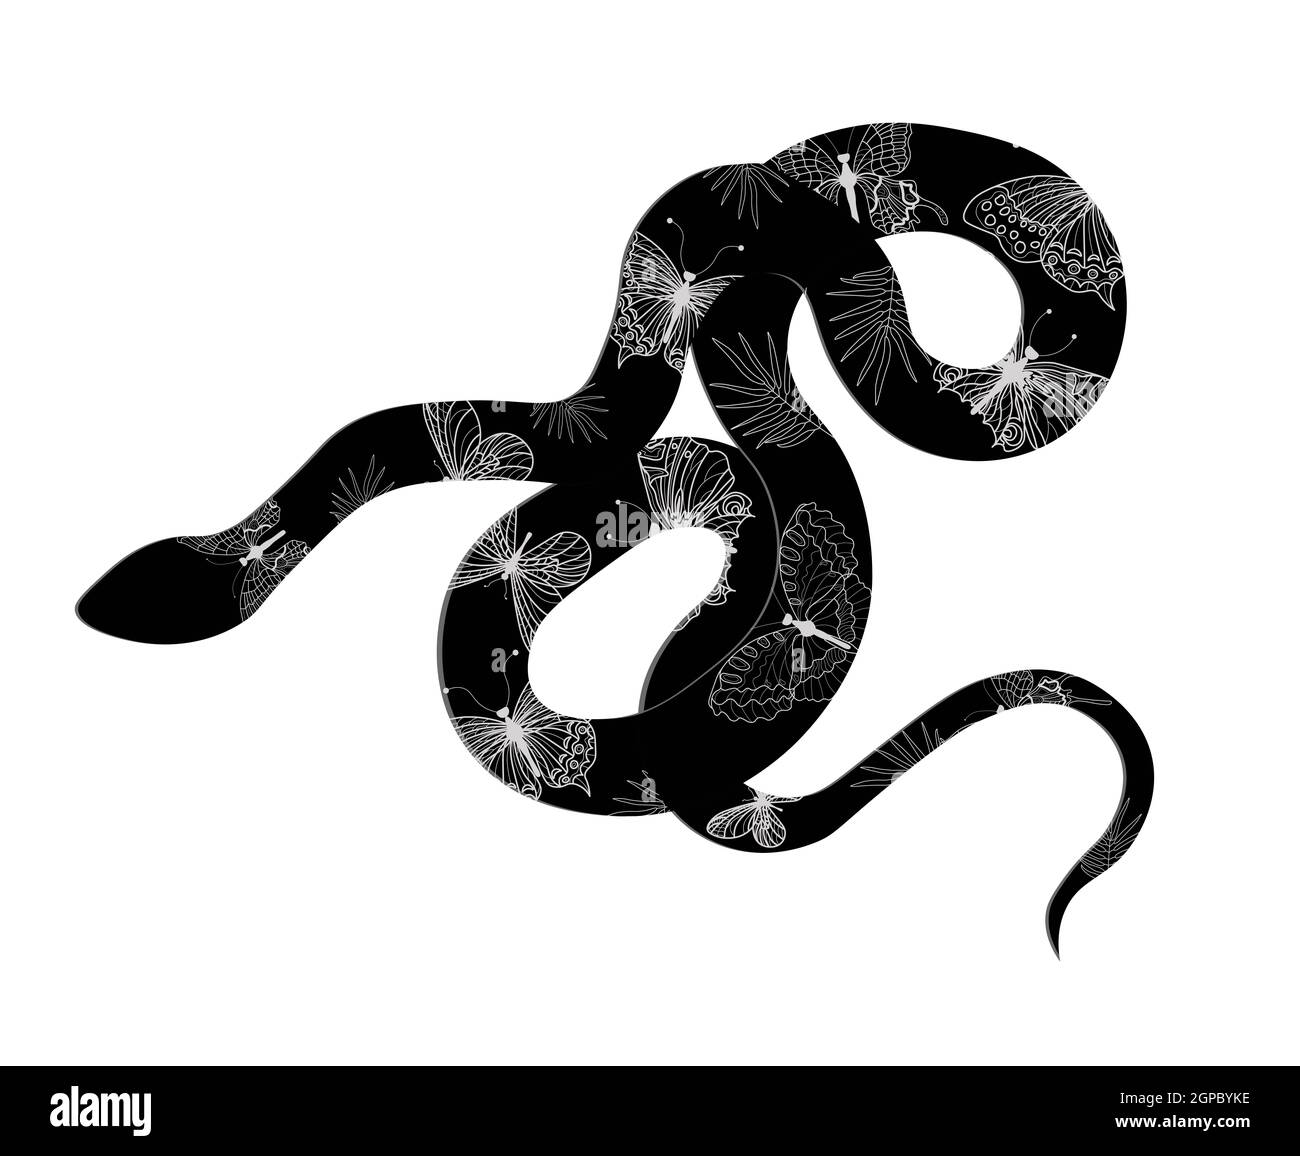 Serpent whiplash ou serpent whiplash occidental Hierophis viridiflavus sur un panneau blanc. Fond. Gênes. Ligurie. Italie Banque D'Images